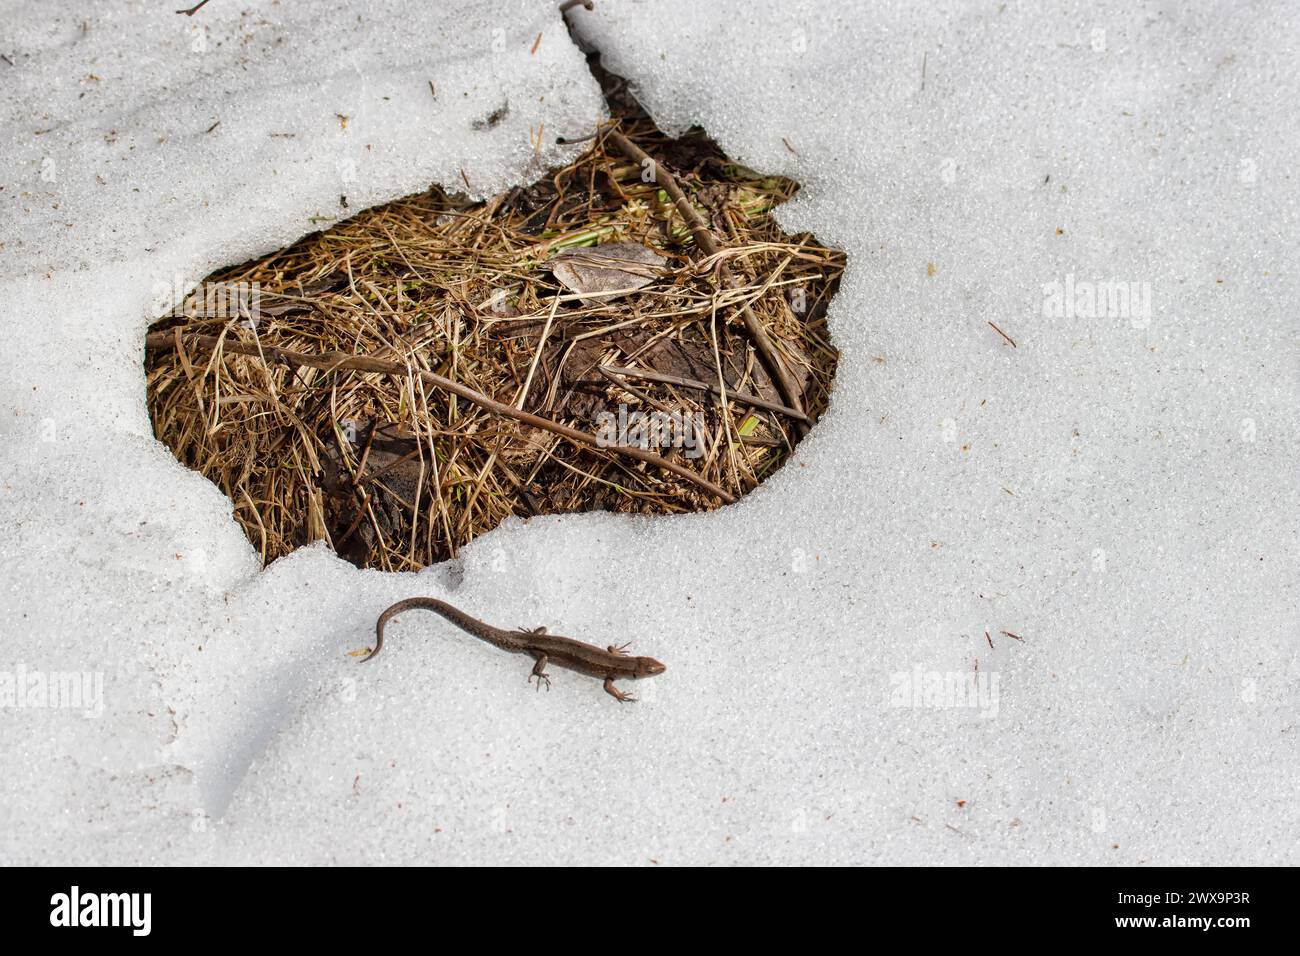 Le lézard anglais commun (Lacerta vivipara) migre au printemps. Cet animal à sang froid s'est réchauffé au soleil et n'évite pas la neige sur le chemin. Ni Banque D'Images